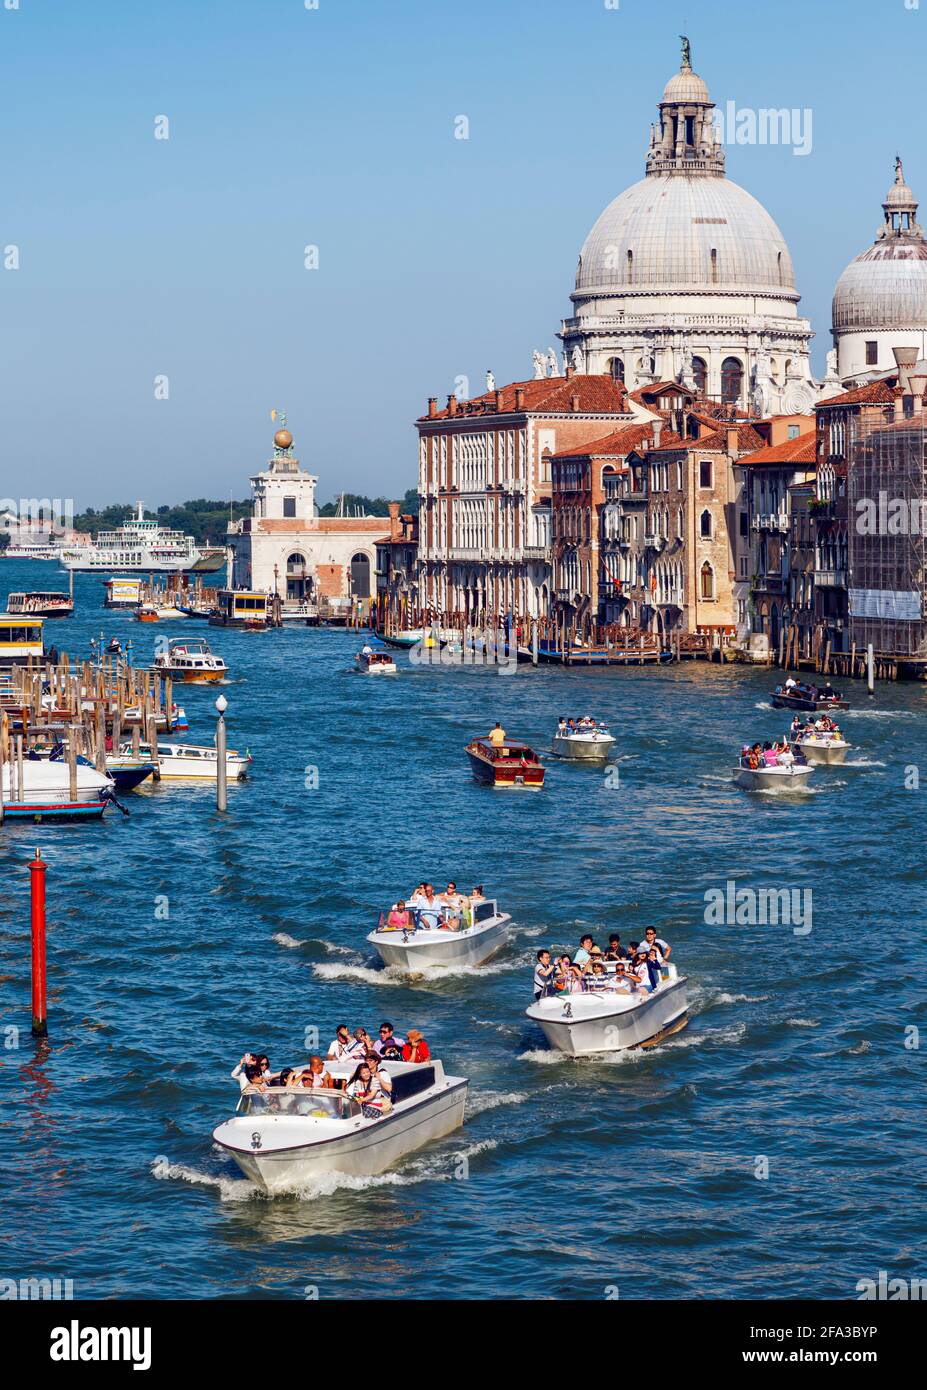 Venice, Venice Province, Veneto Region, Italy. View down Grand Canal to Santa Maria della Salute.  Venice and its lagoon are a UNESCO World Heritage S Stock Photo